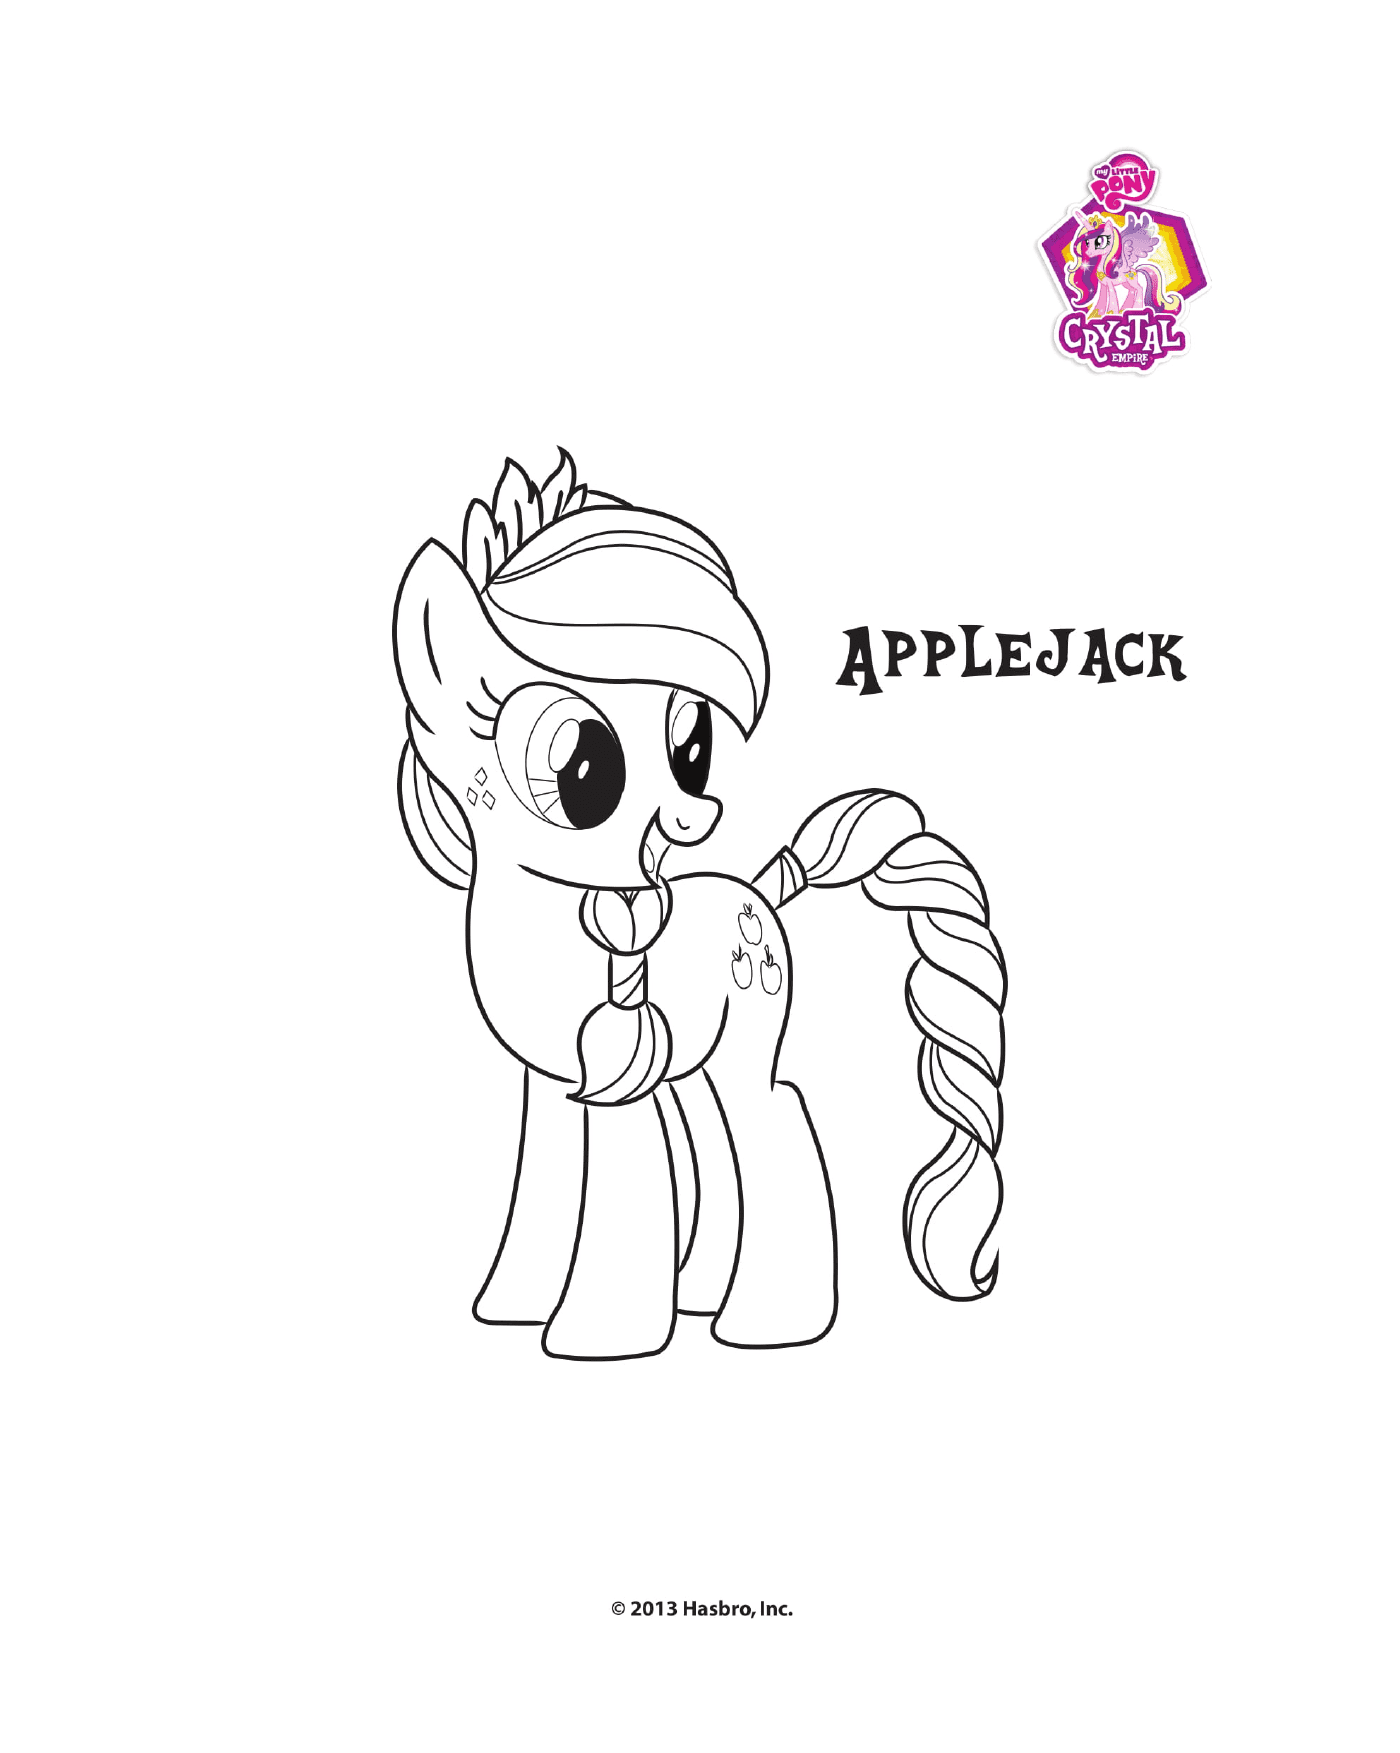   Applejack, le fier poney 